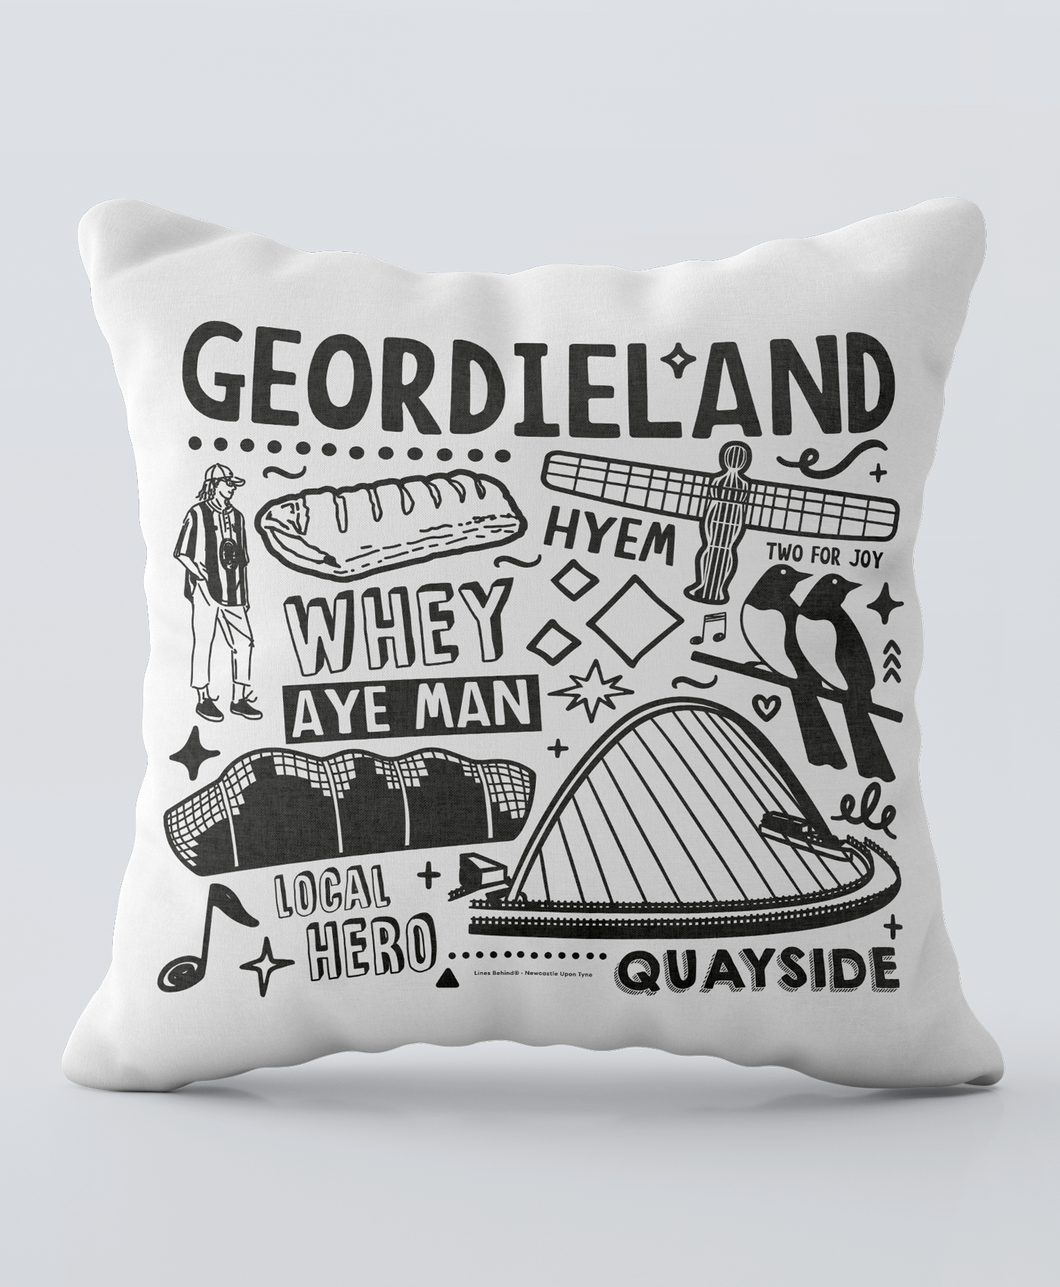 Geordieland #1 - Cushion